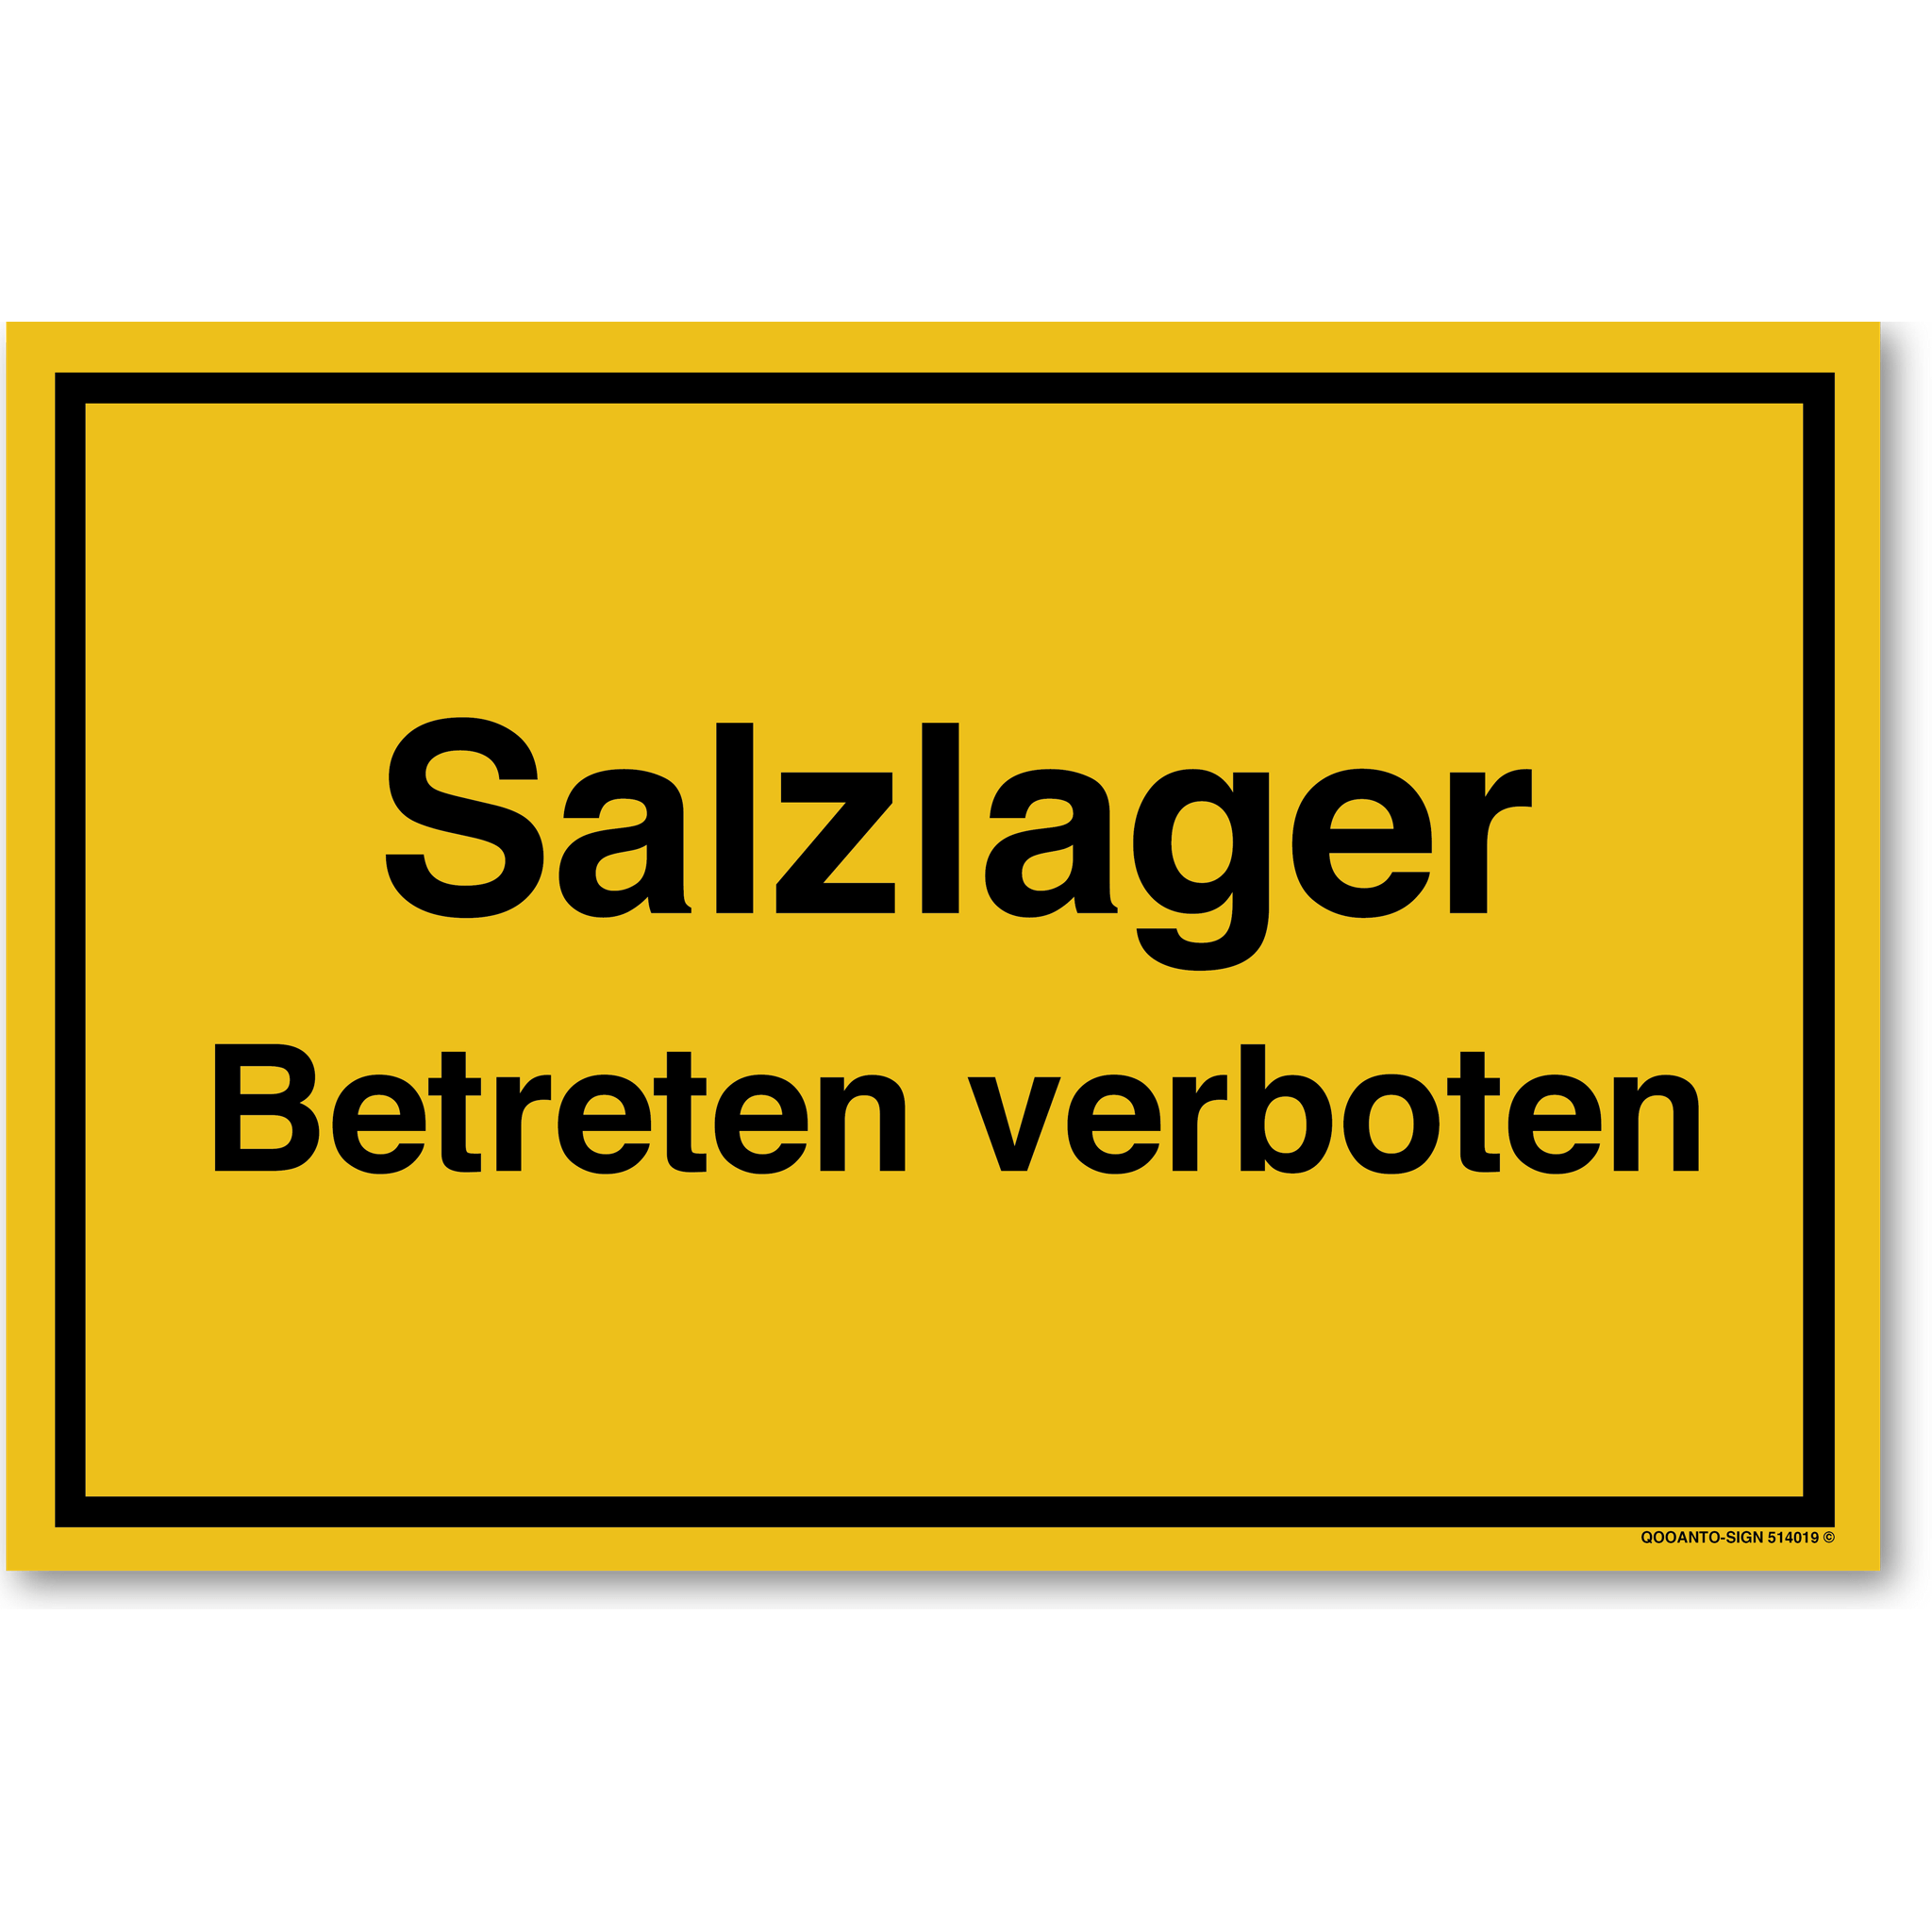 Salzlager Betreten verboten, gelb, Schild